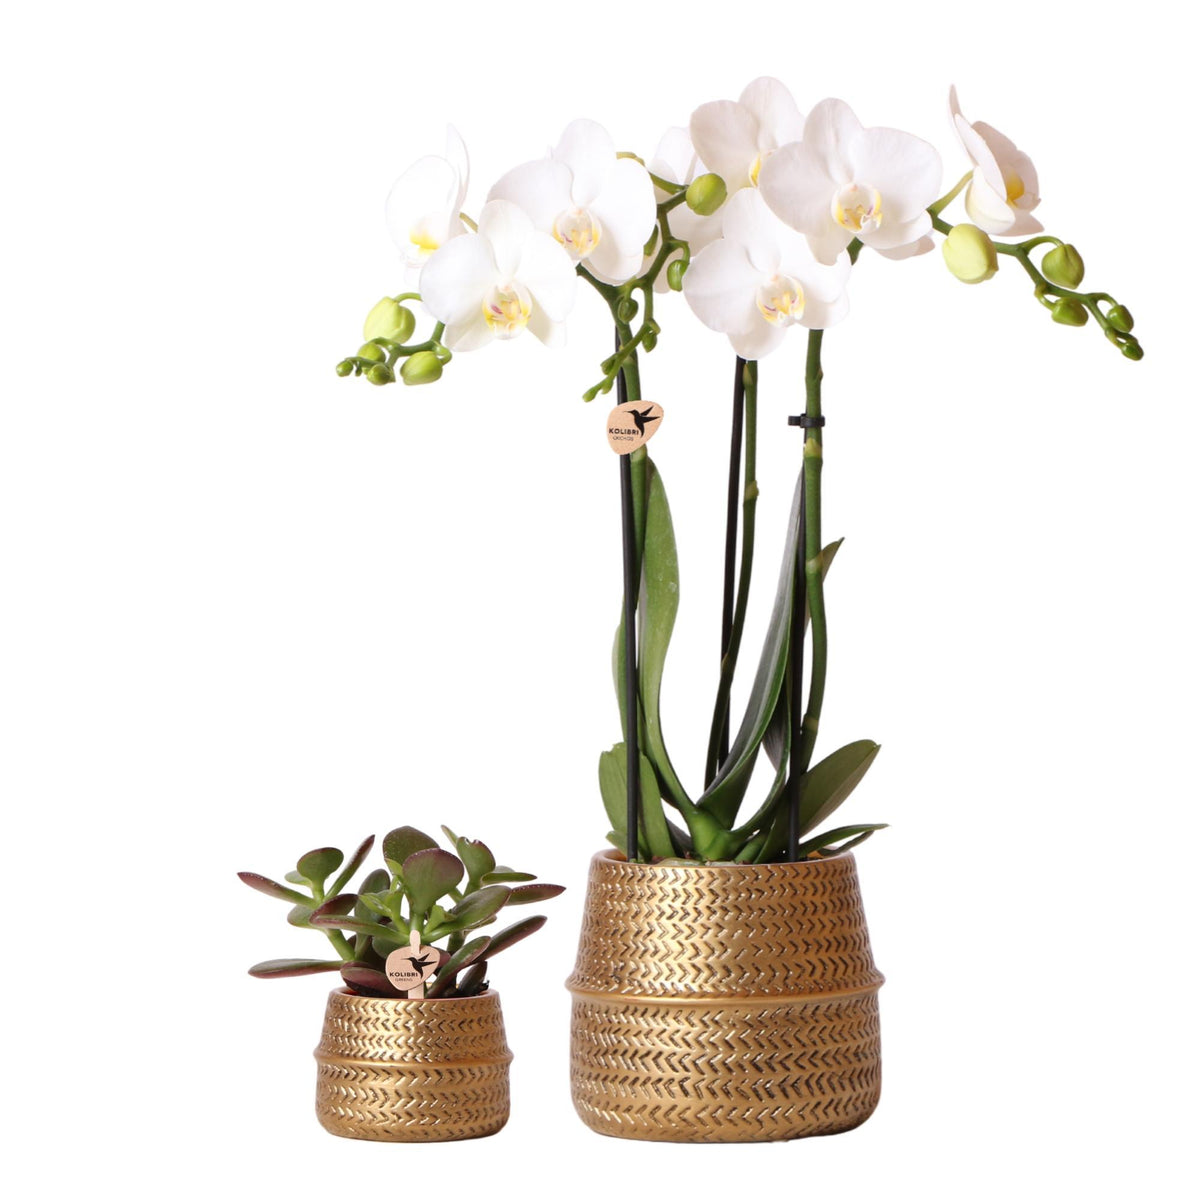 Planten set Groove goud bevat een witte Phalaenopsis orchidee Amabilis met een diameter van 9 cm en een groene Succulent Crassula Ovata met een diameter van 6 cm. Deze set wordt geleverd inclusief gouden keramieken sierpotten.